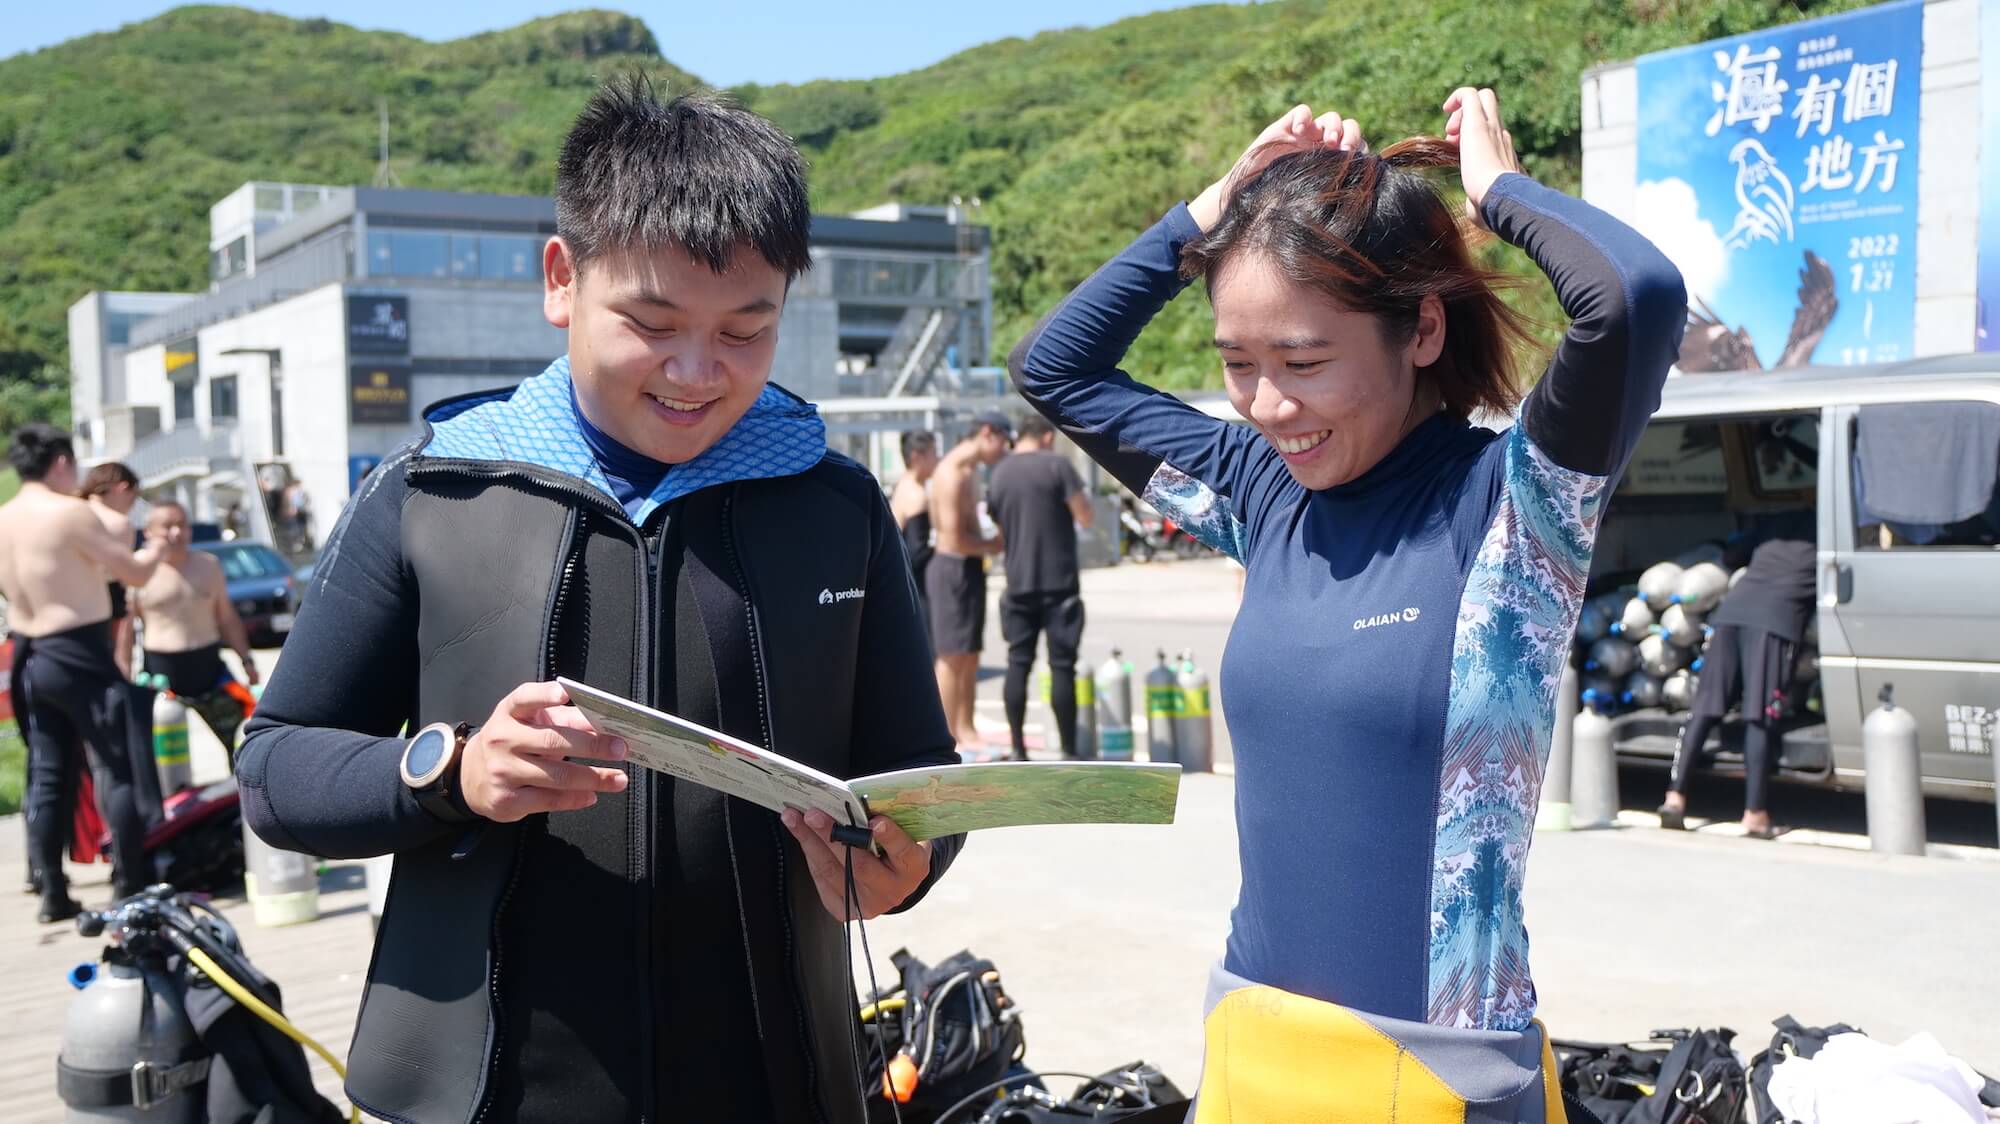 潛水教練下水之前，可以與客人或學生分享目標觀察生物，增加潛水樂趣與品質